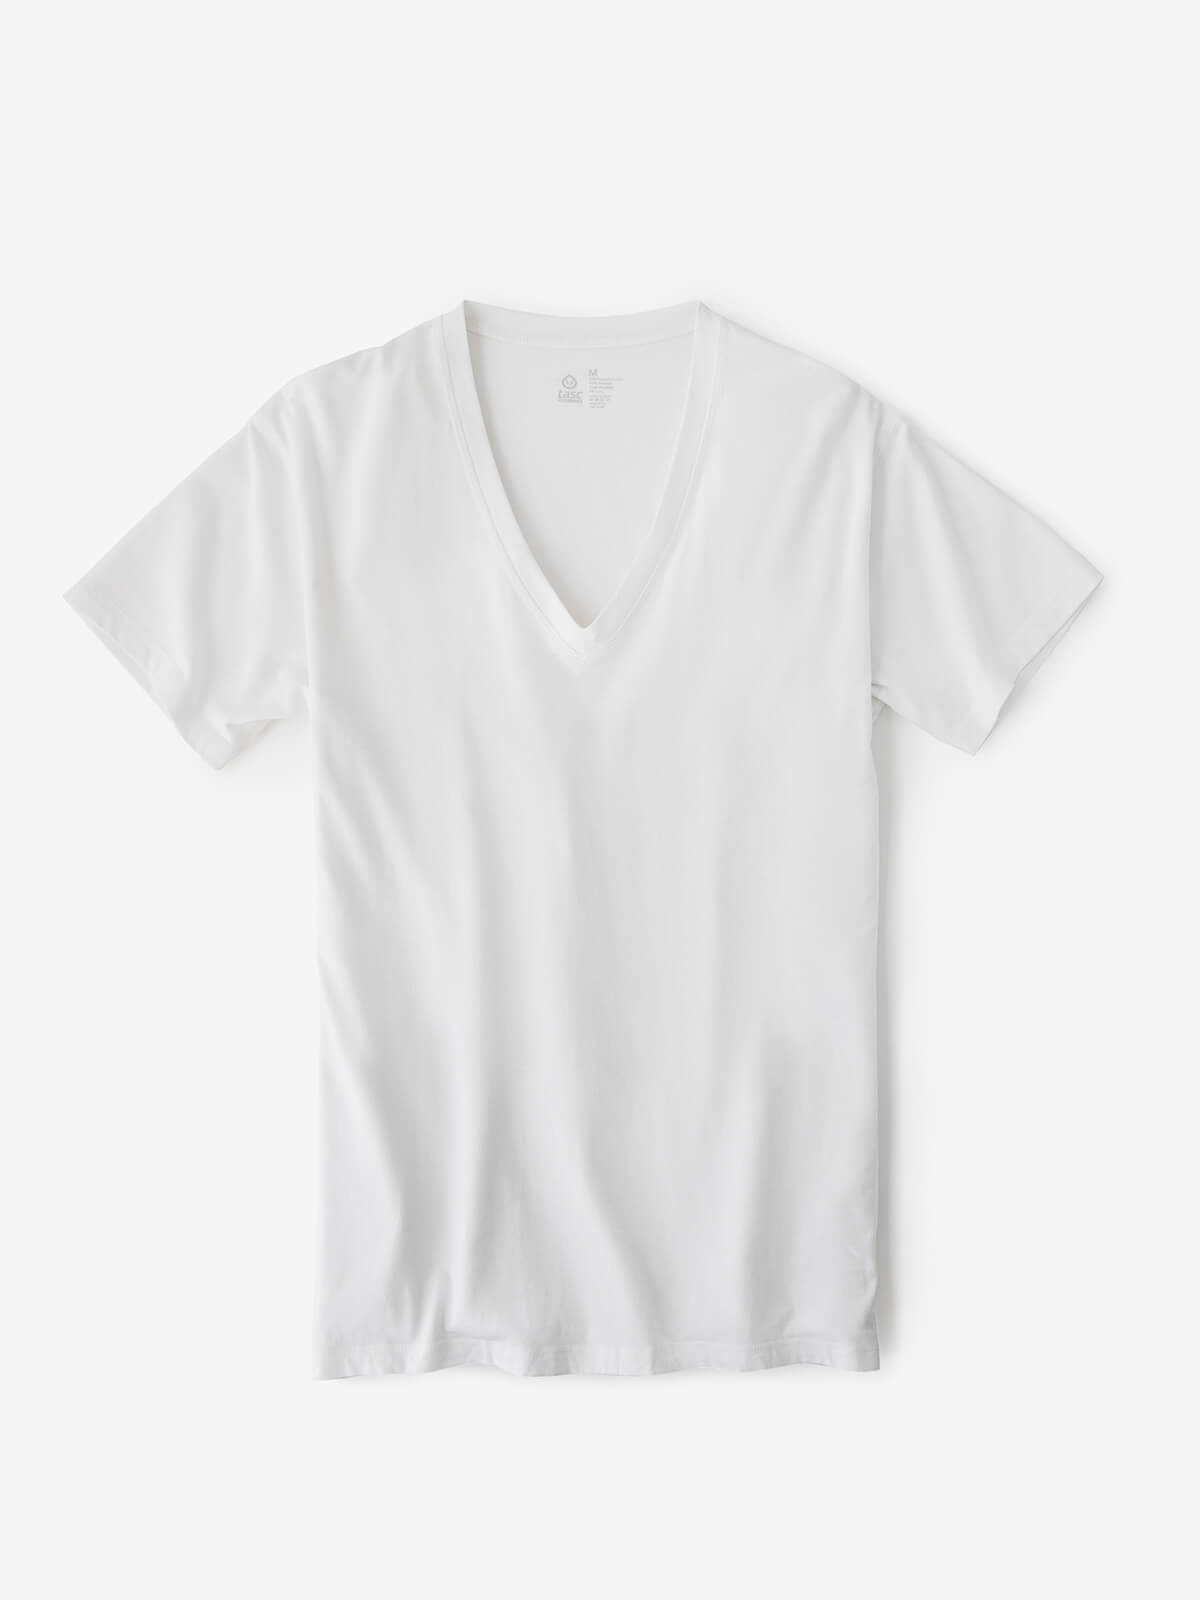 tasc Performance - Deep V-Neck Undershirt - (White)